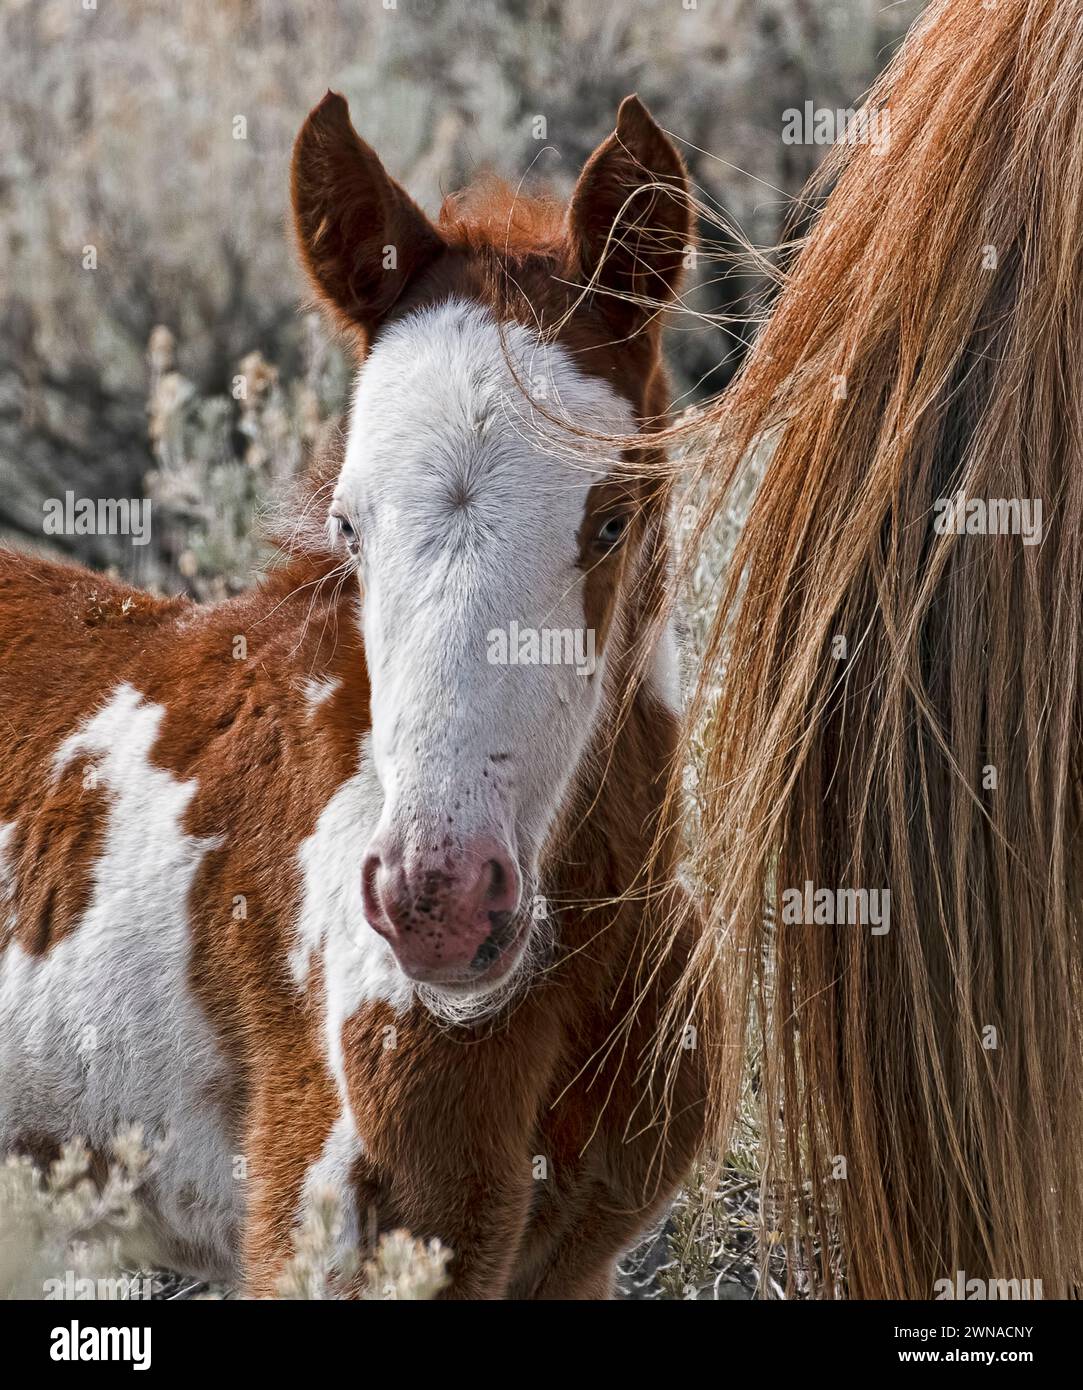 La mandria di cavalli selvatici di Steens Mountain ha una struttura da lieve a moderata e varia in colori: Vernici, colmo, roan, buckskin, nero, palomino, e. Foto Stock